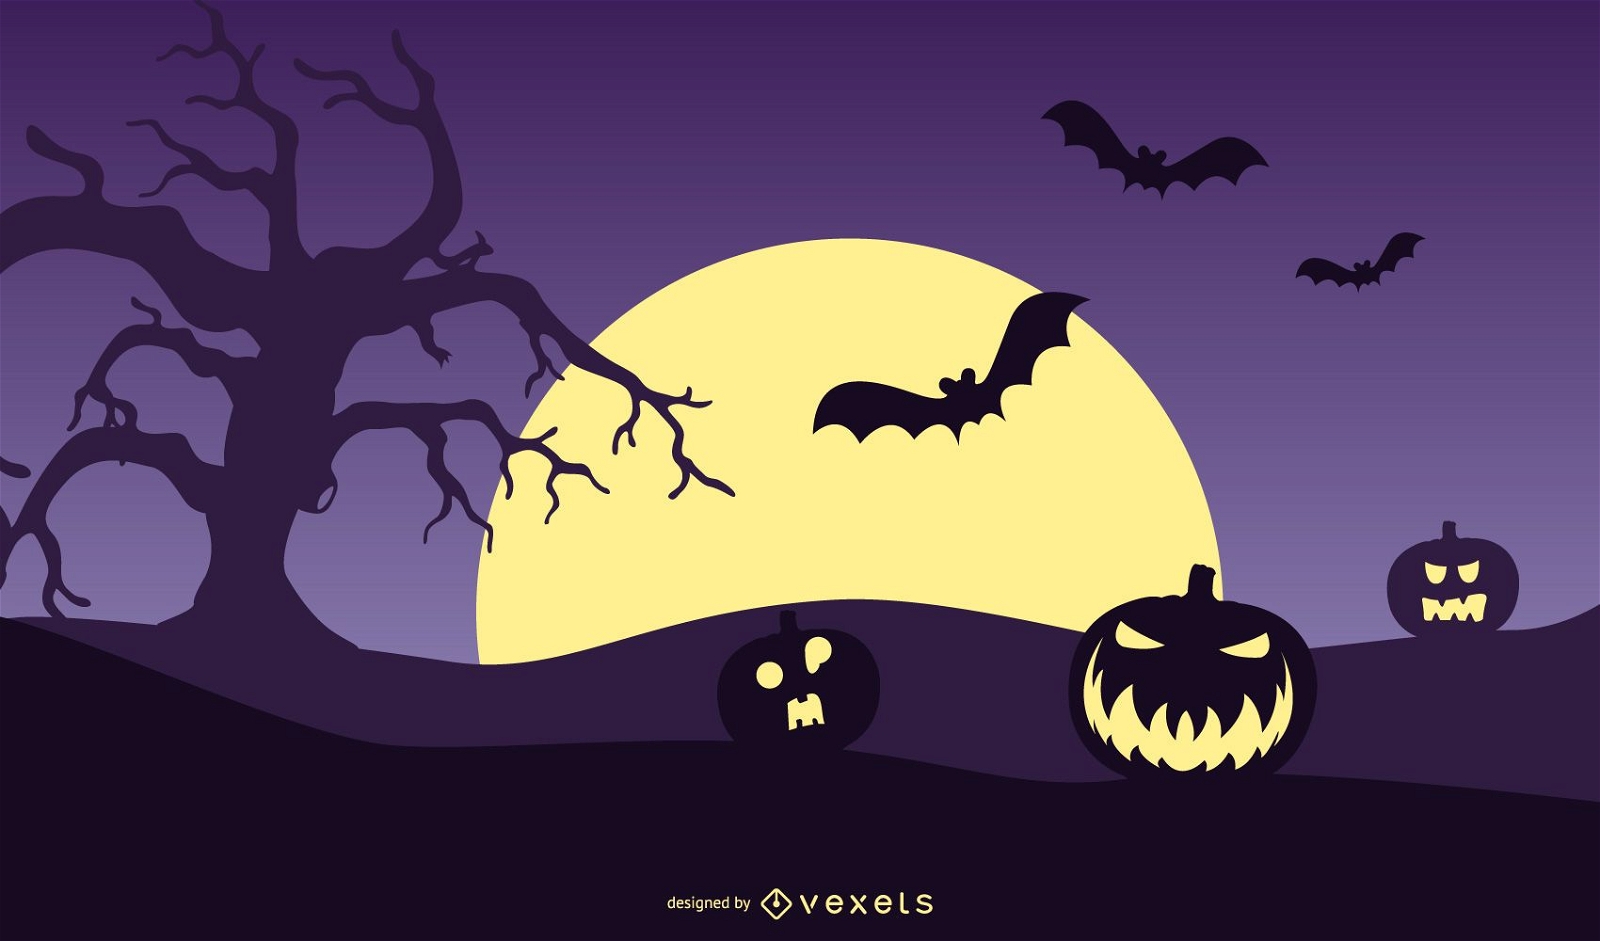 Pumpkin Halloween Night illustration